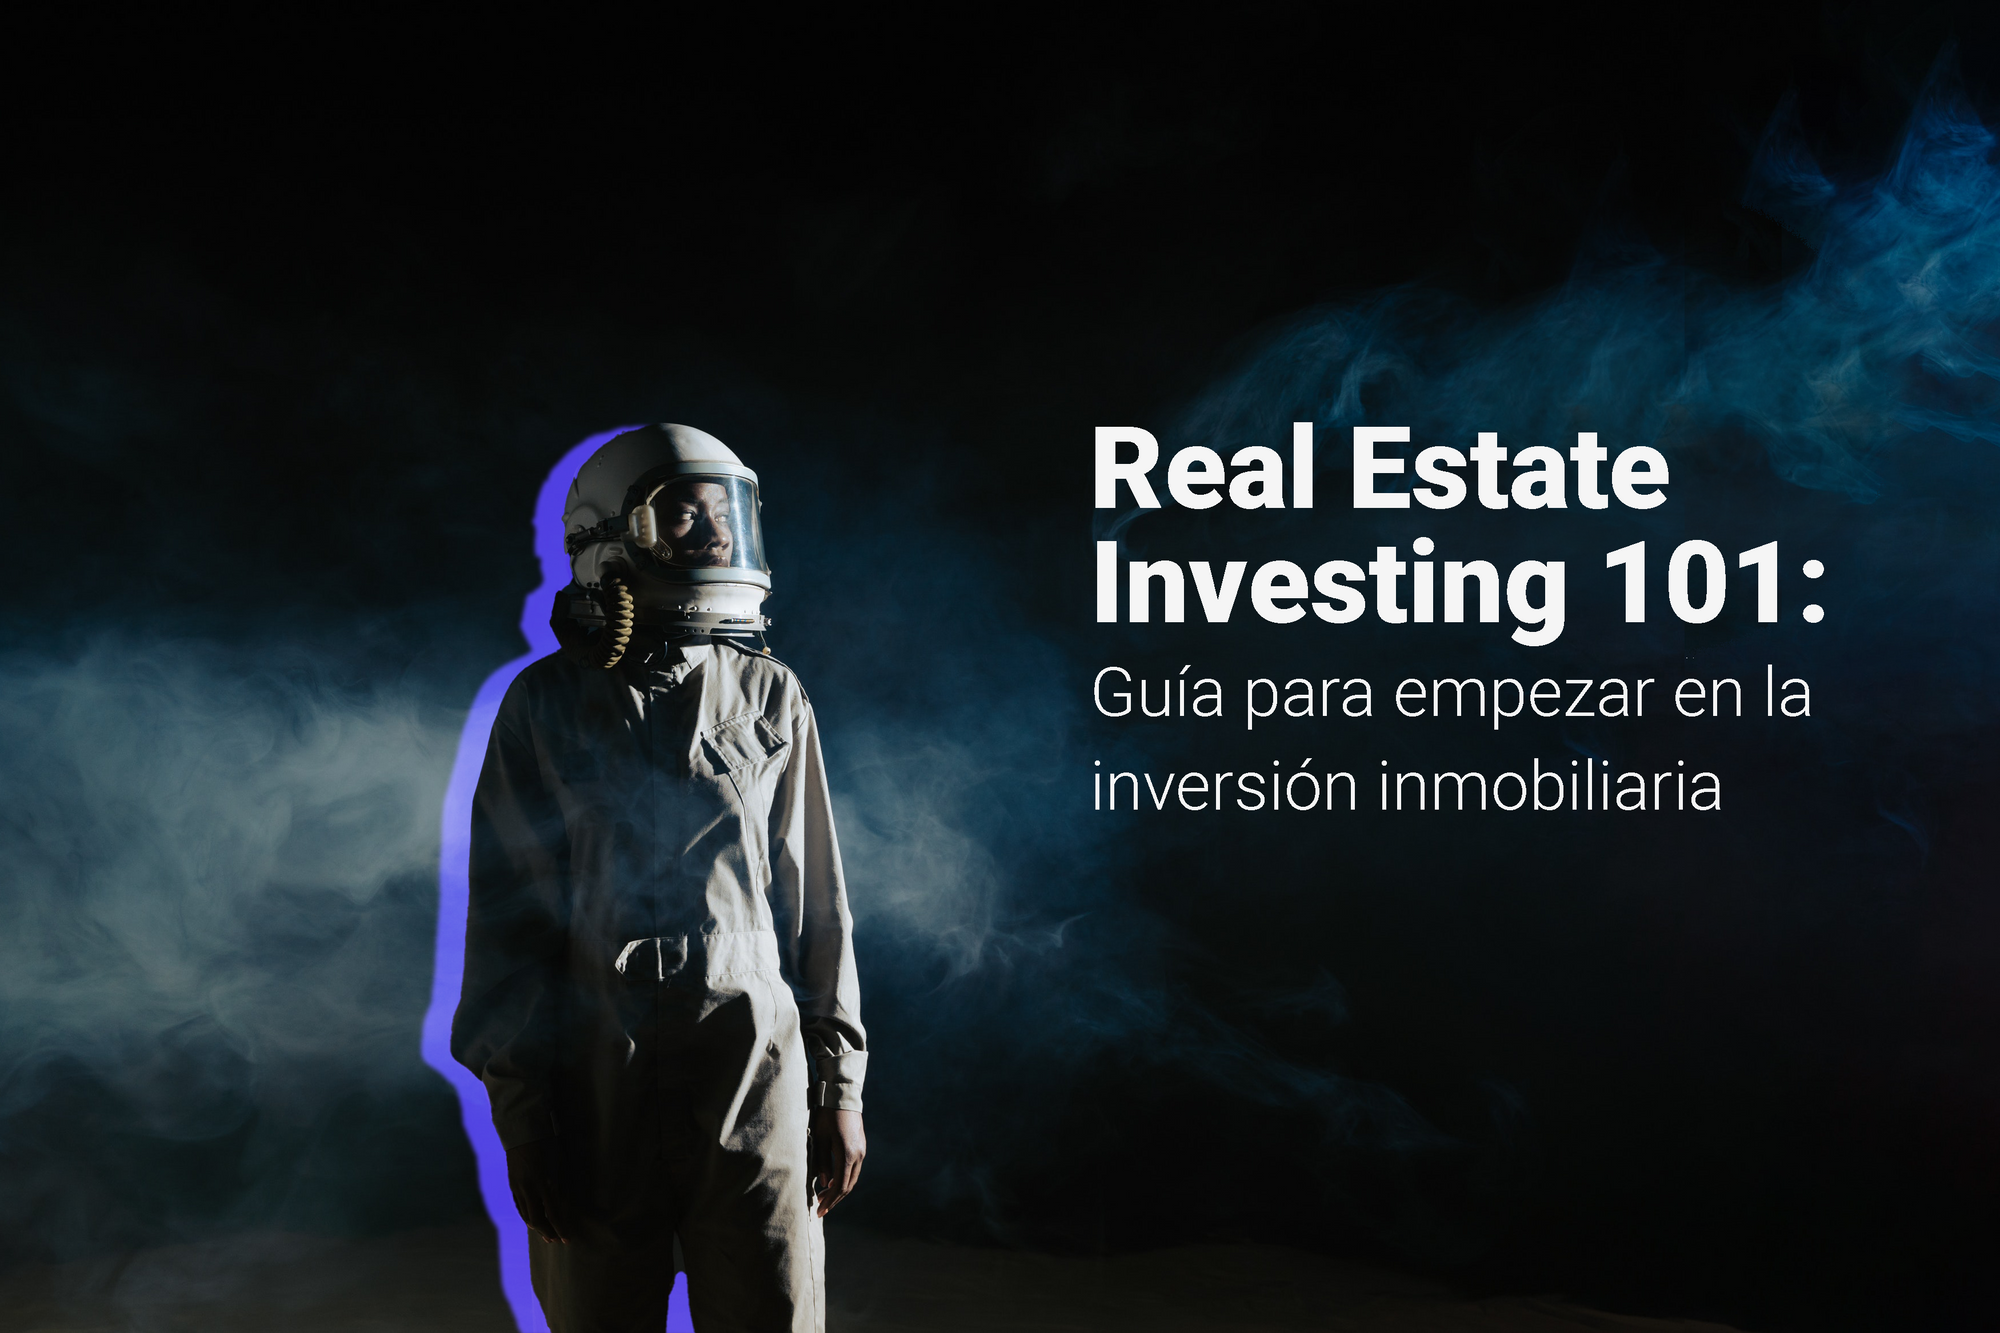 Real Estate Investing 101: Guía para empezar en la inversión inmobiliaria